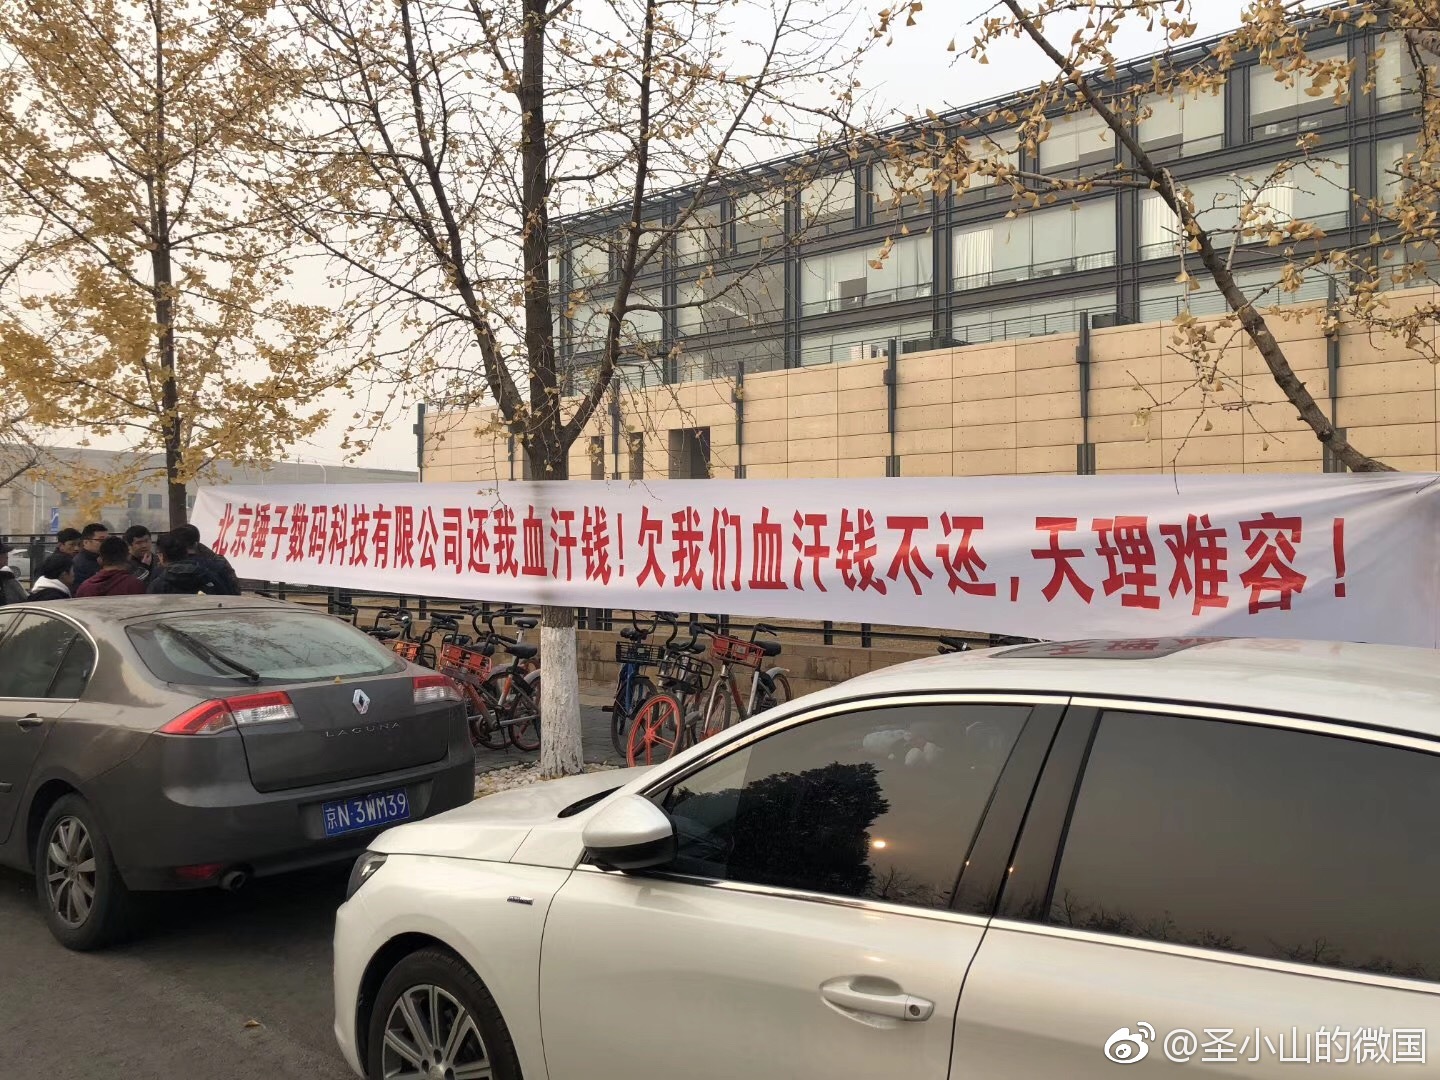 锤子北京办公室外闪现欠钱不还横幅 前员工称公司非锤粉离职率高